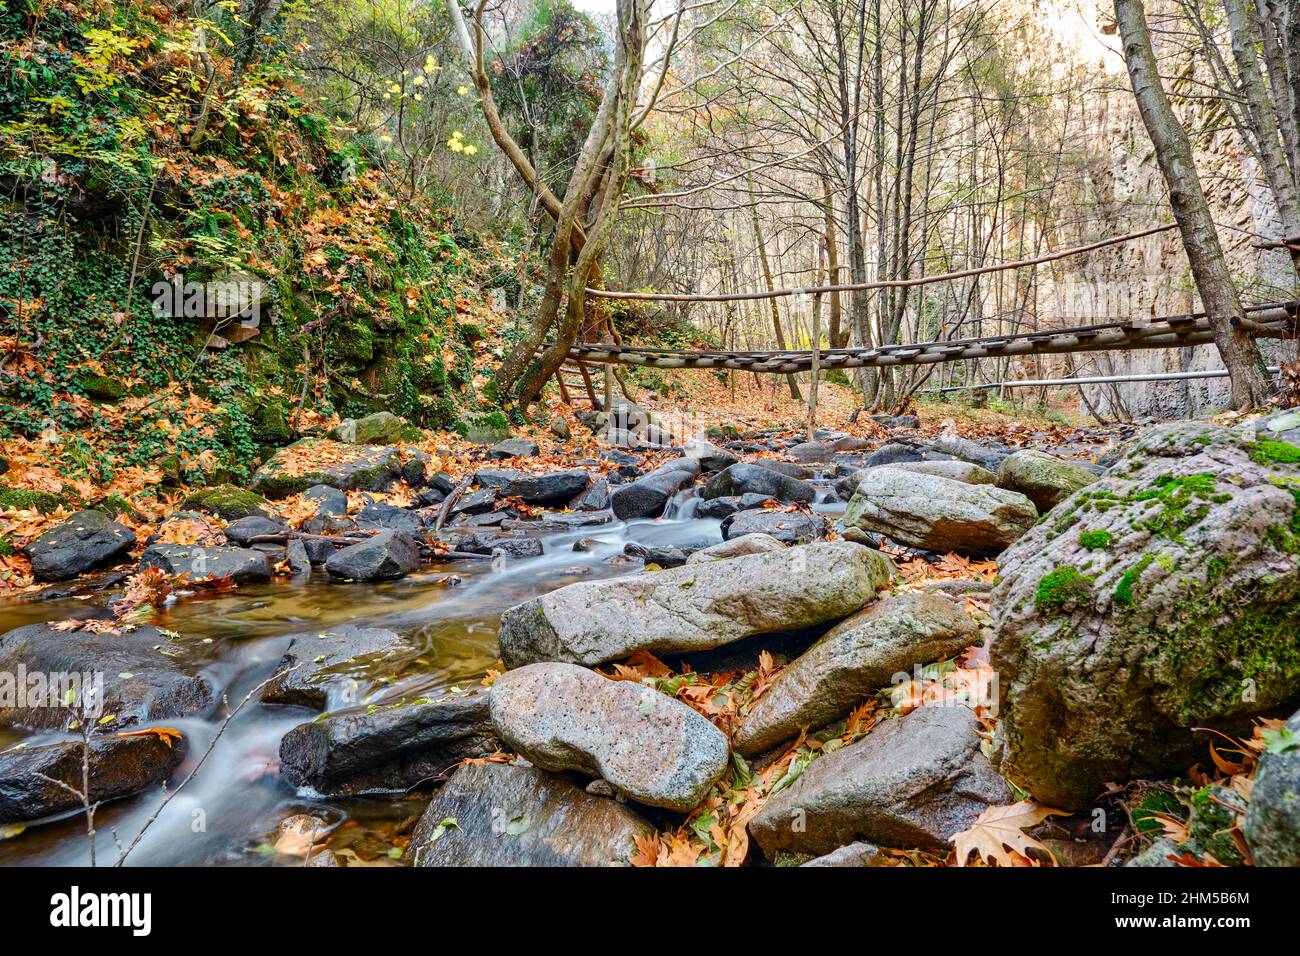 Ponte sospeso da foto a lunga esposizione, foto a ponte ad angolo basso e flusso d'acqua intorno alle pietre. Foto Stock